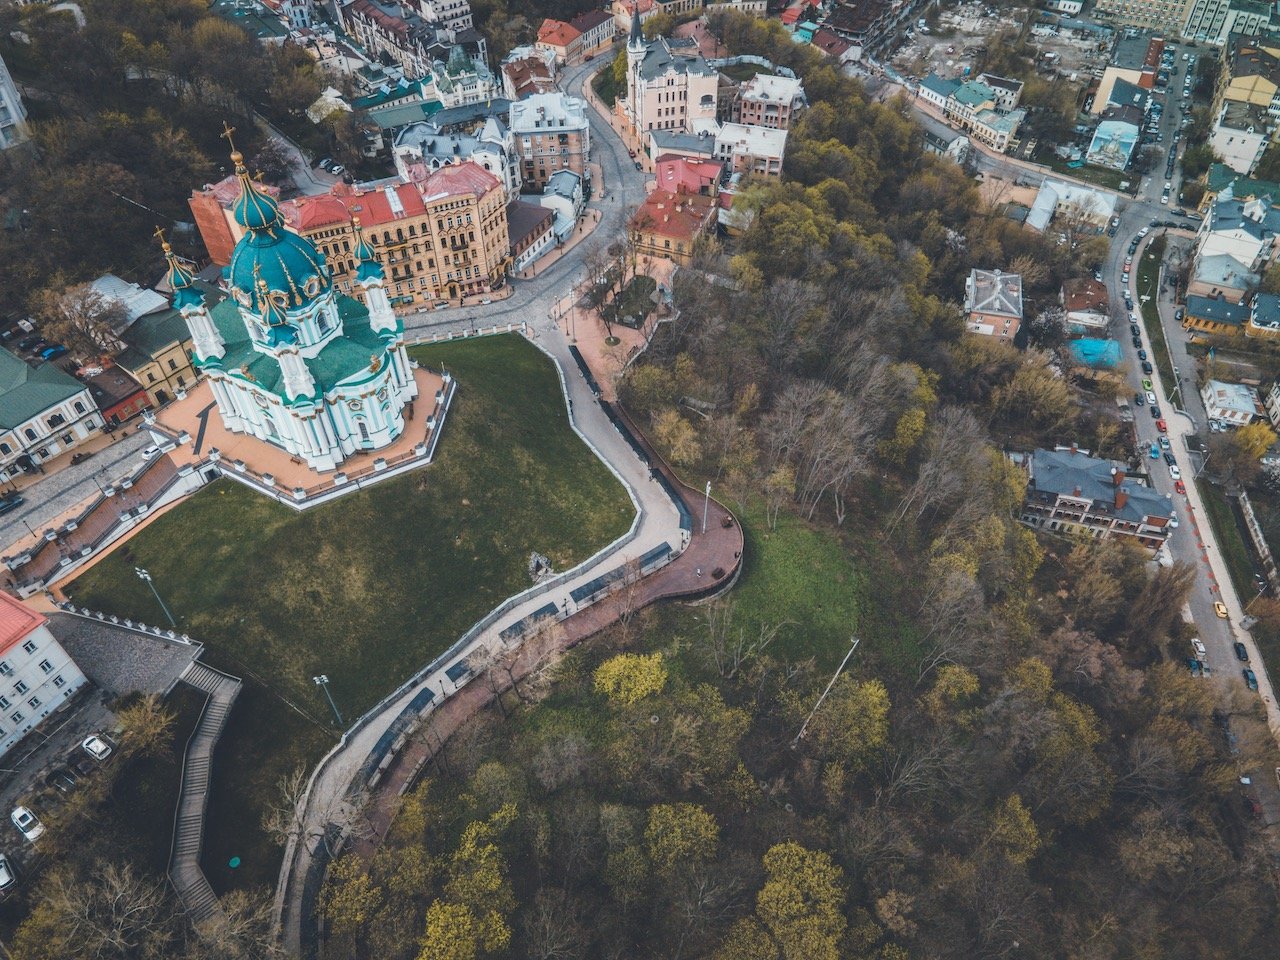   St. Andrew’s Church, Kiev, Ukraine (ISO 190, 4.5 mm,  f /2.8, 1/15 s)  